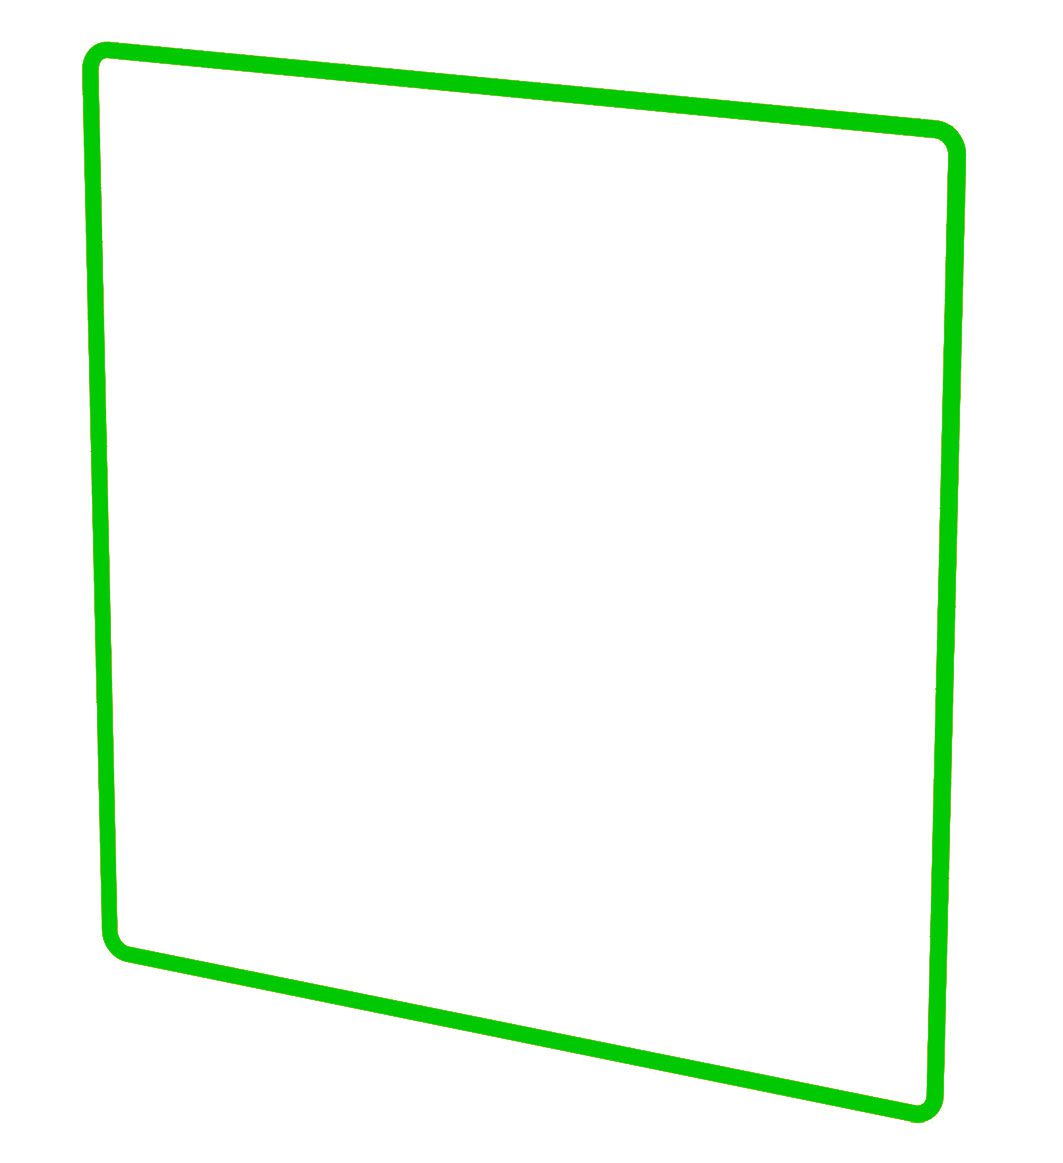 Designprofil Gr.3x3 priamos grün